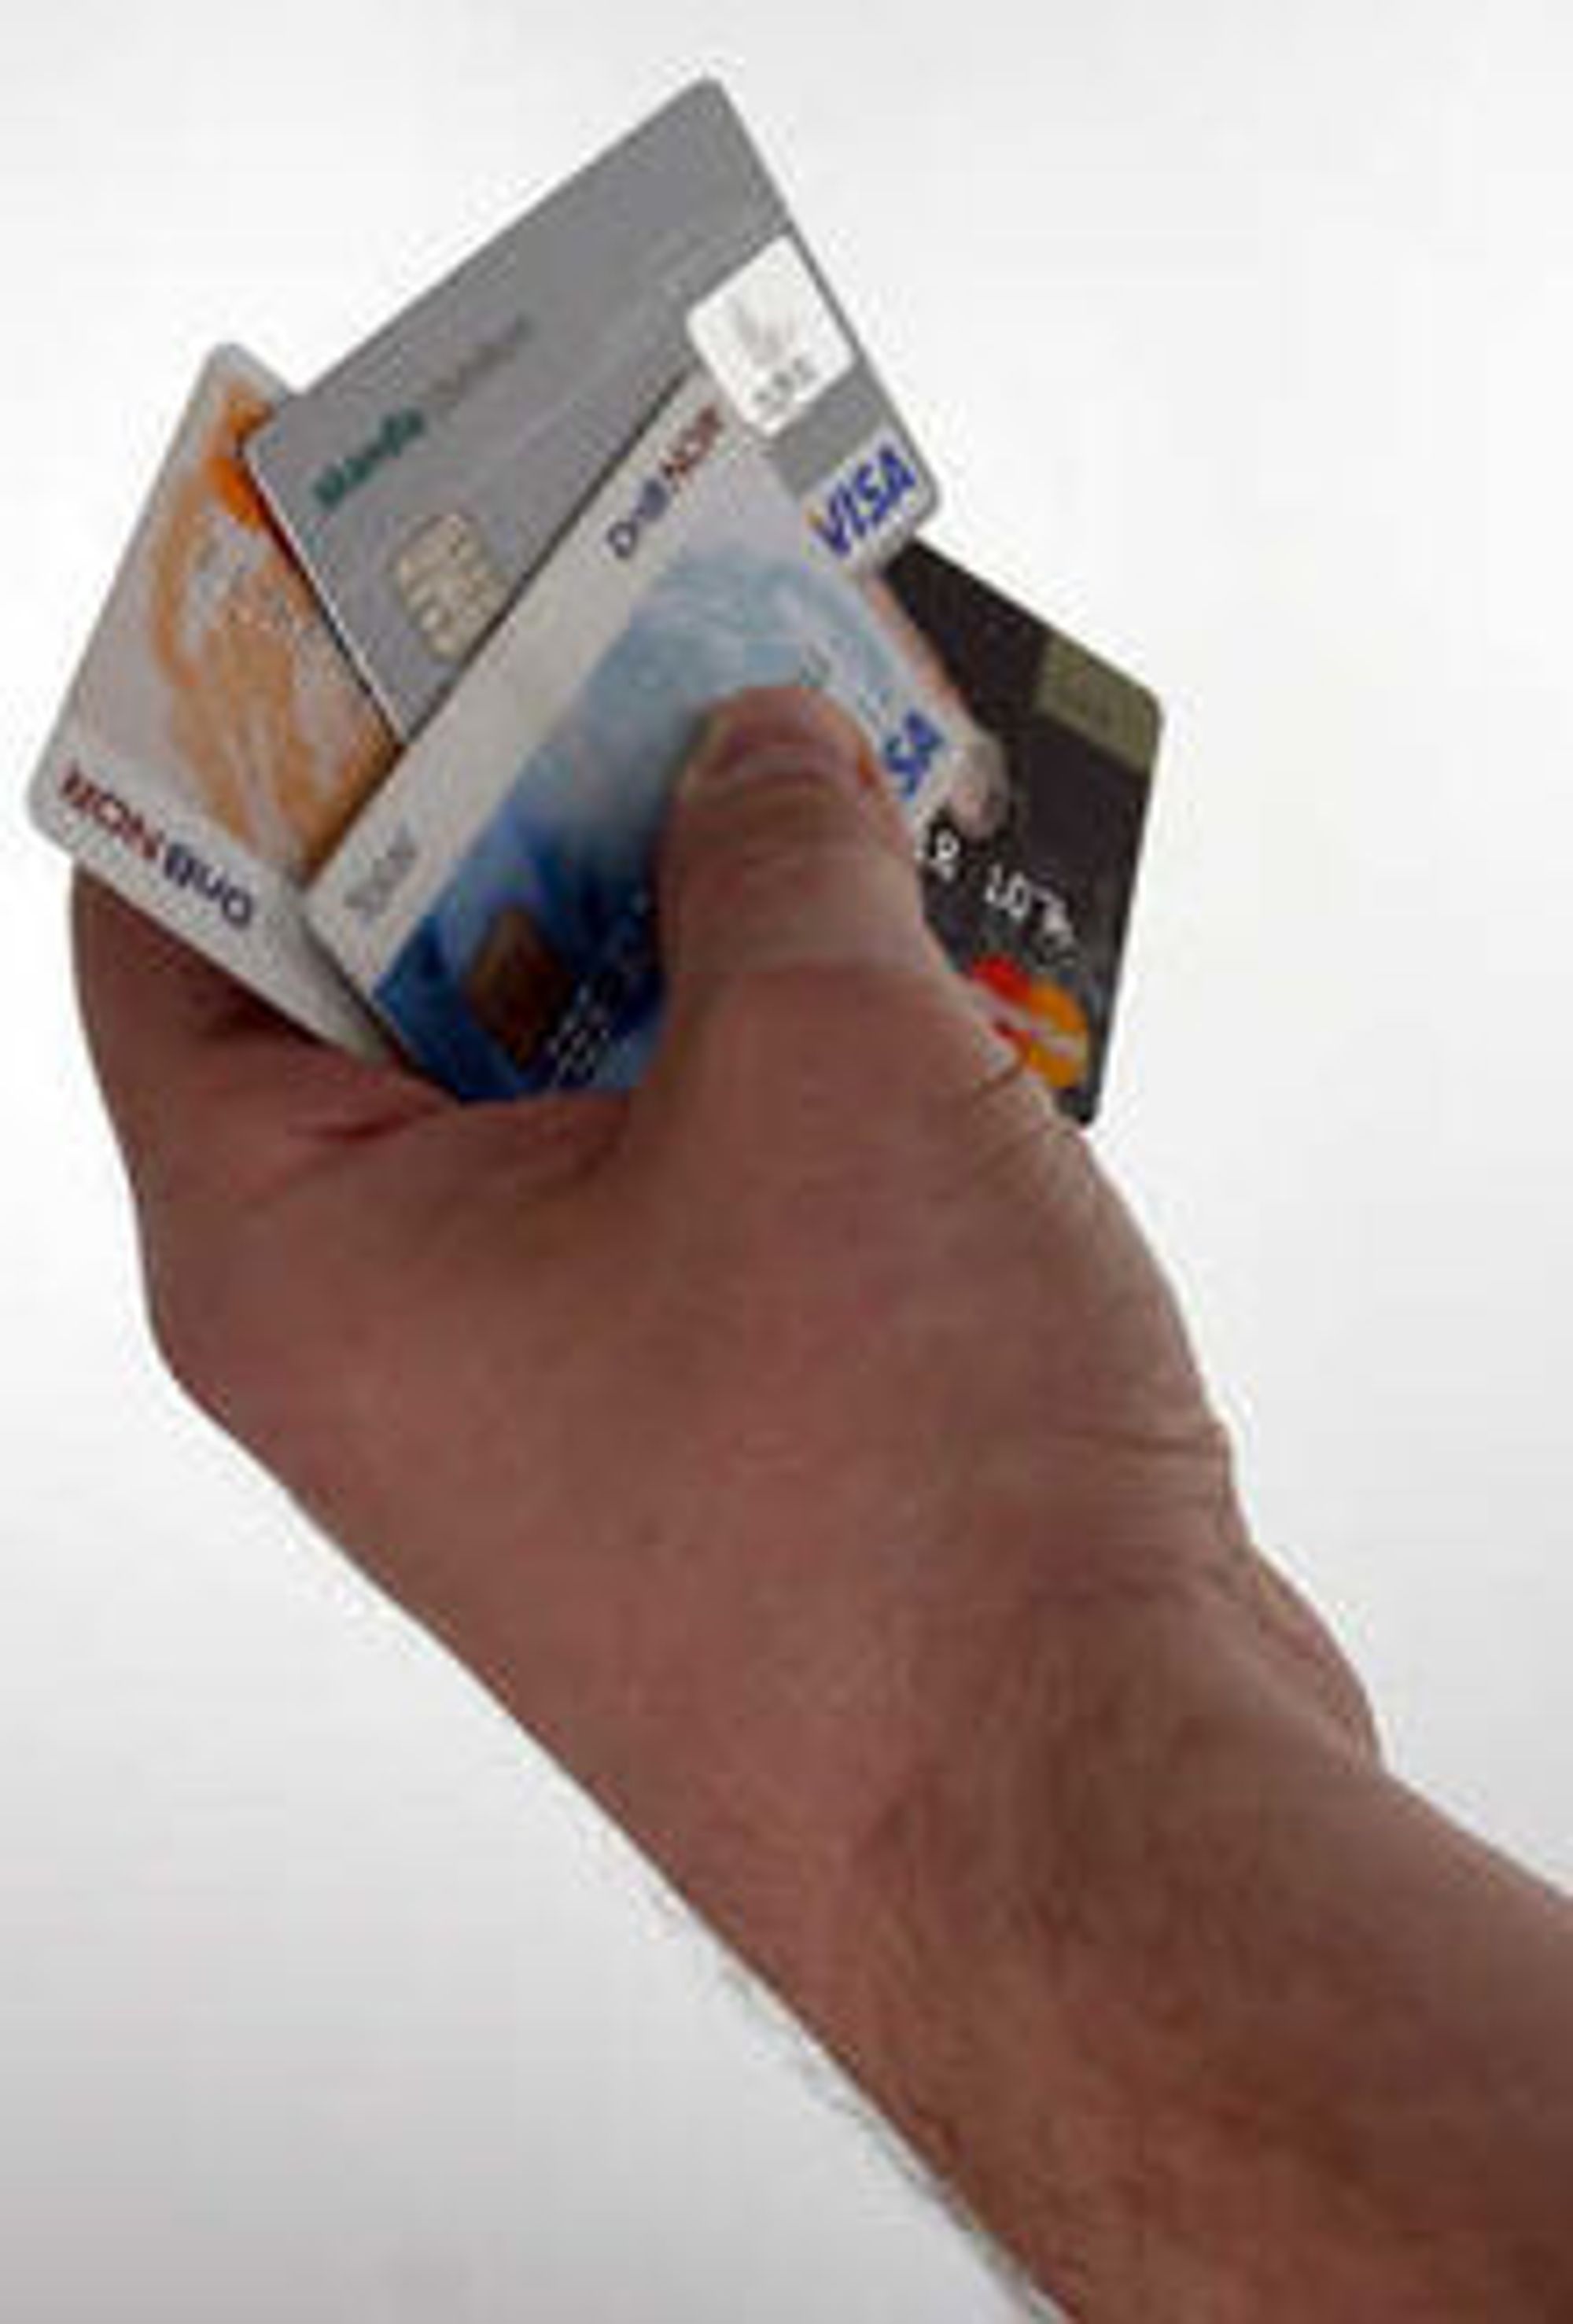 Lett å kopiere: Alle bankkort i Norge leveres nå med chip. Samtidig leveres de med magnetstripe, og dermed er kortet like lett å kopiere som tidligere, ifølge Forbrukerrådet.